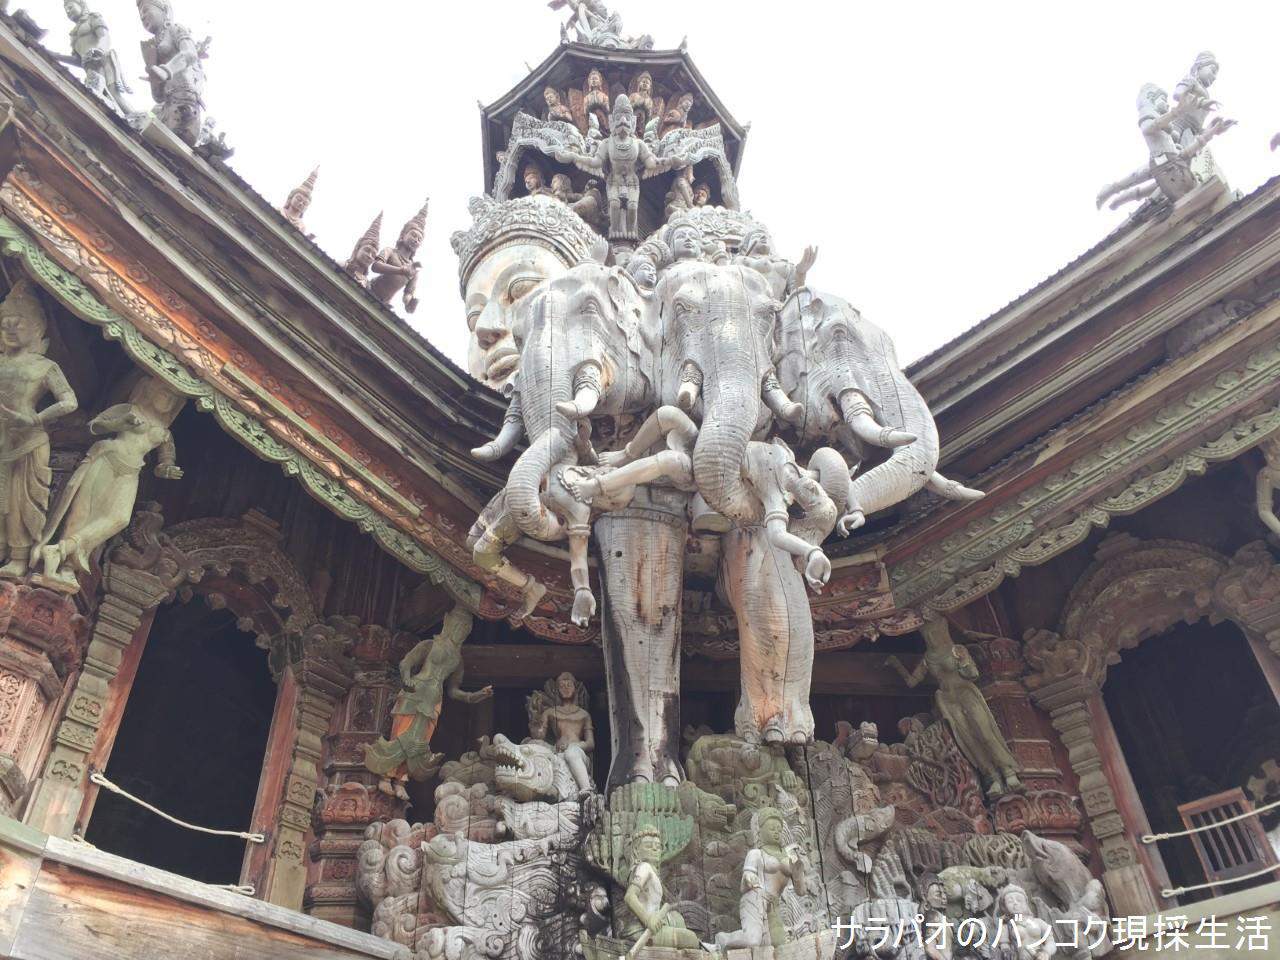 サンクチュアリー・オブ・トゥルーは現在も建築中の芸術的な巨大木造寺院　in　パタヤ